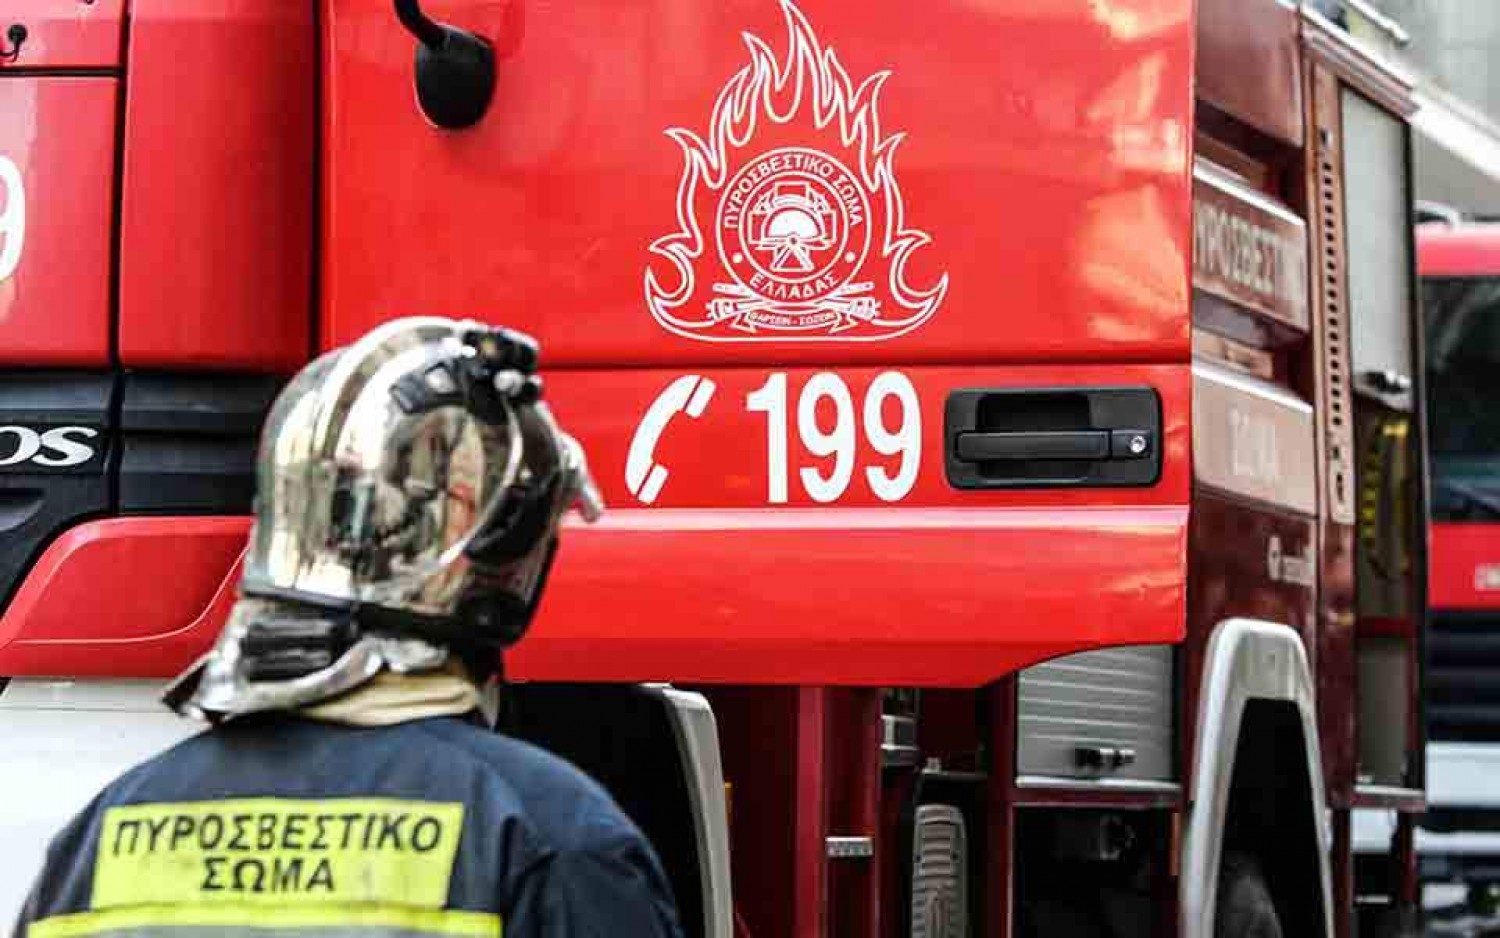 Αποφέυχθηκε τραγωδία σε λεοφωρείο που πήρε φωτιά στην Αχαρνών- Ψύχραιμοι οι επιβάτες πρόλαβαν να κατέβουν